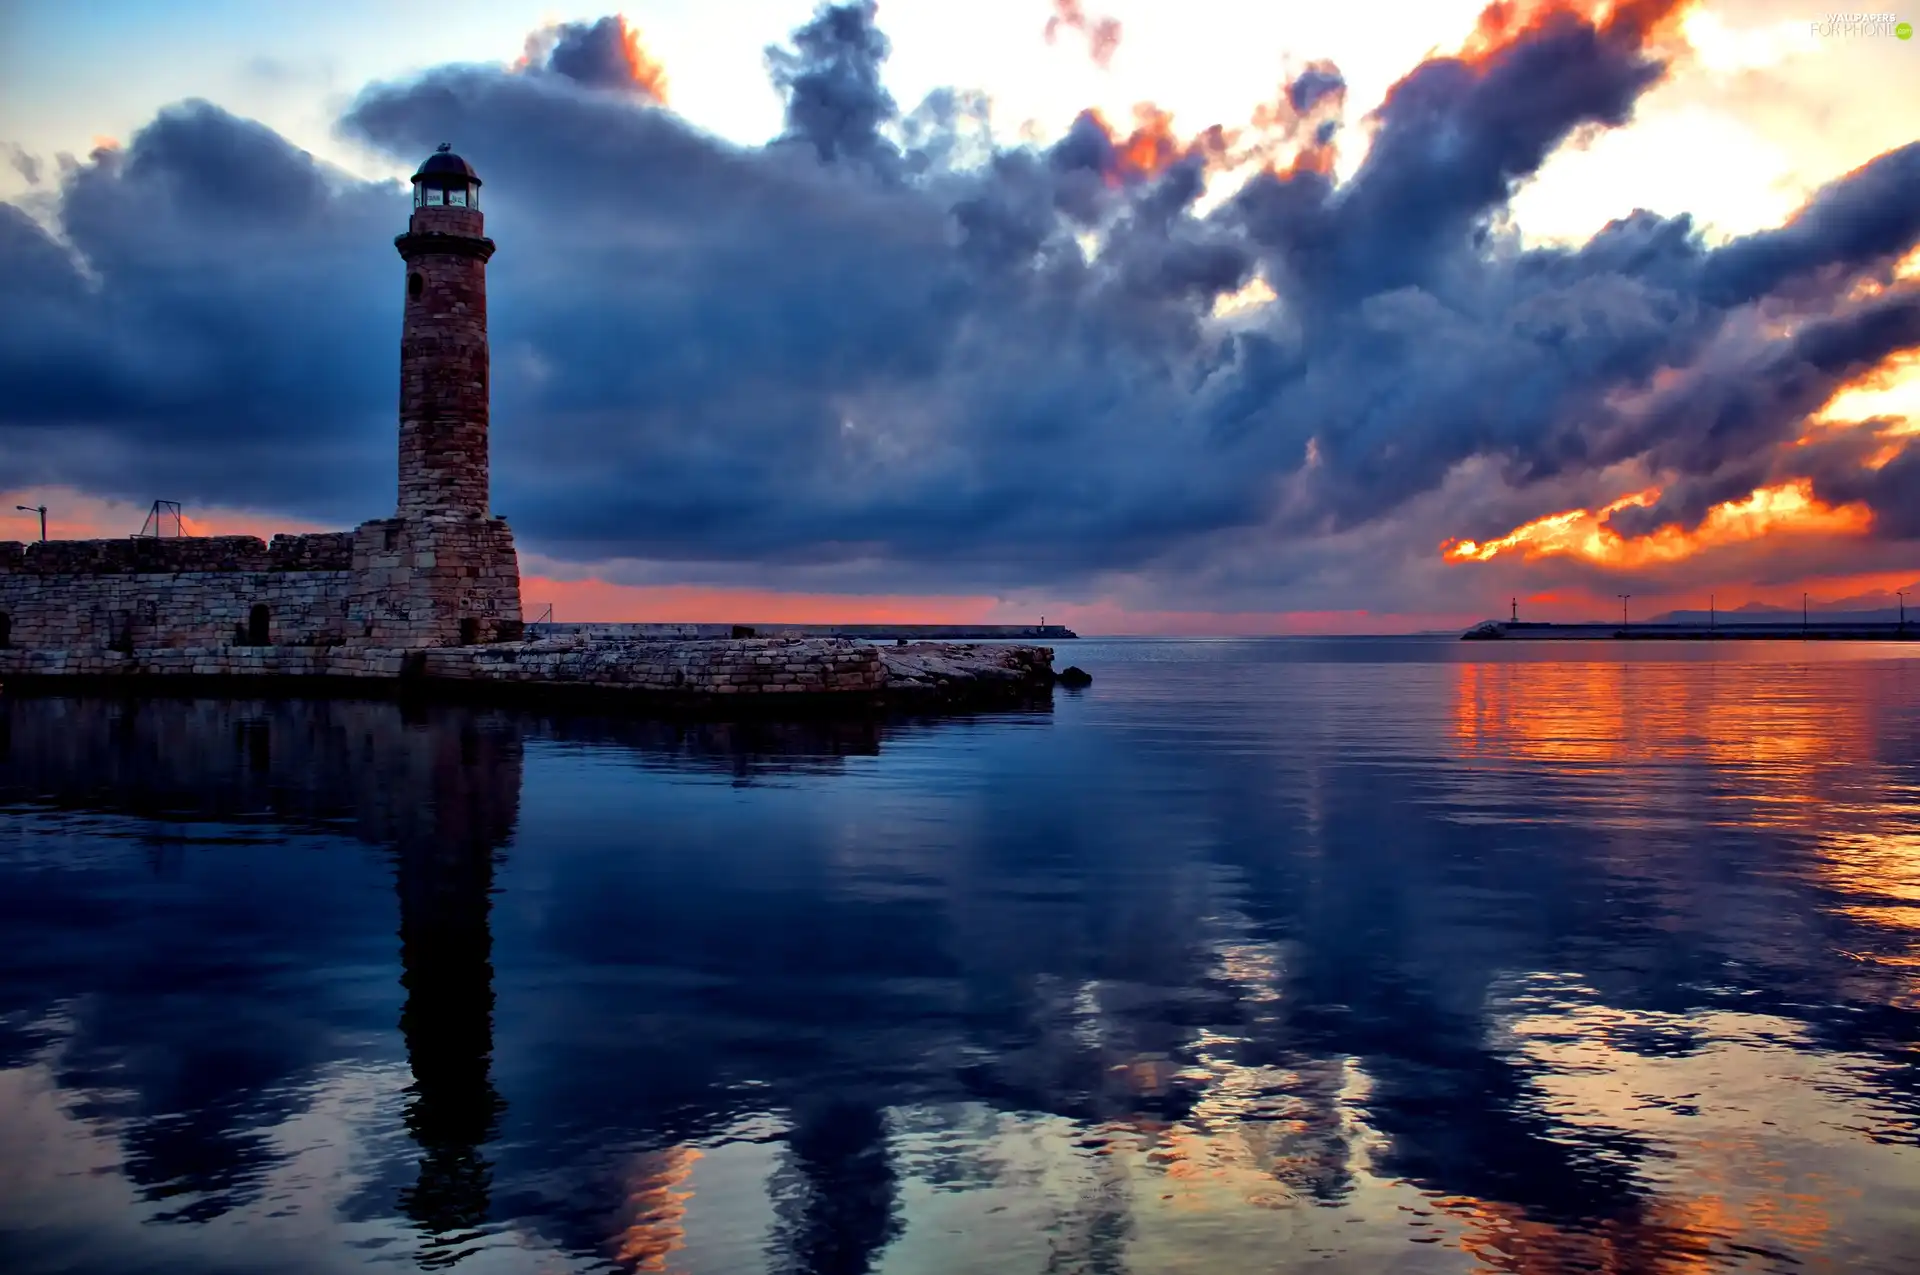 clouds, Lighthouse, sea